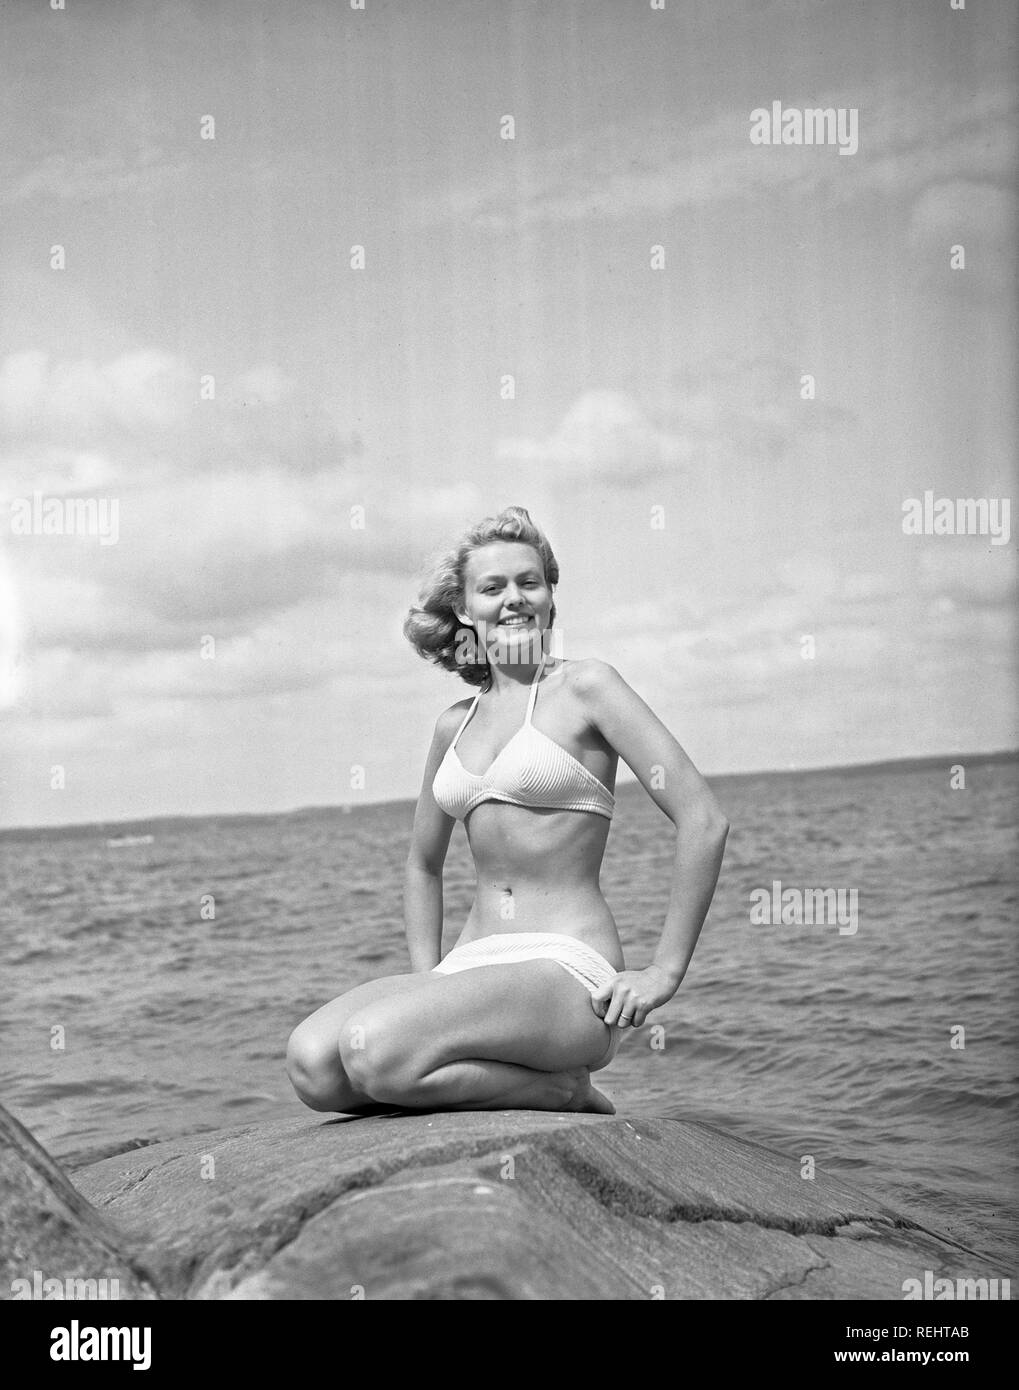 1940 bikinifashion. Eine schwedische junge Frau in einem weißen Bikini an  einem Sommertag. Schweden 1948. Foto Kristoffersson ref217 a-7. Ihr Name  ist Haide Göransson, schwedische Fashion Model Stockfotografie - Alamy